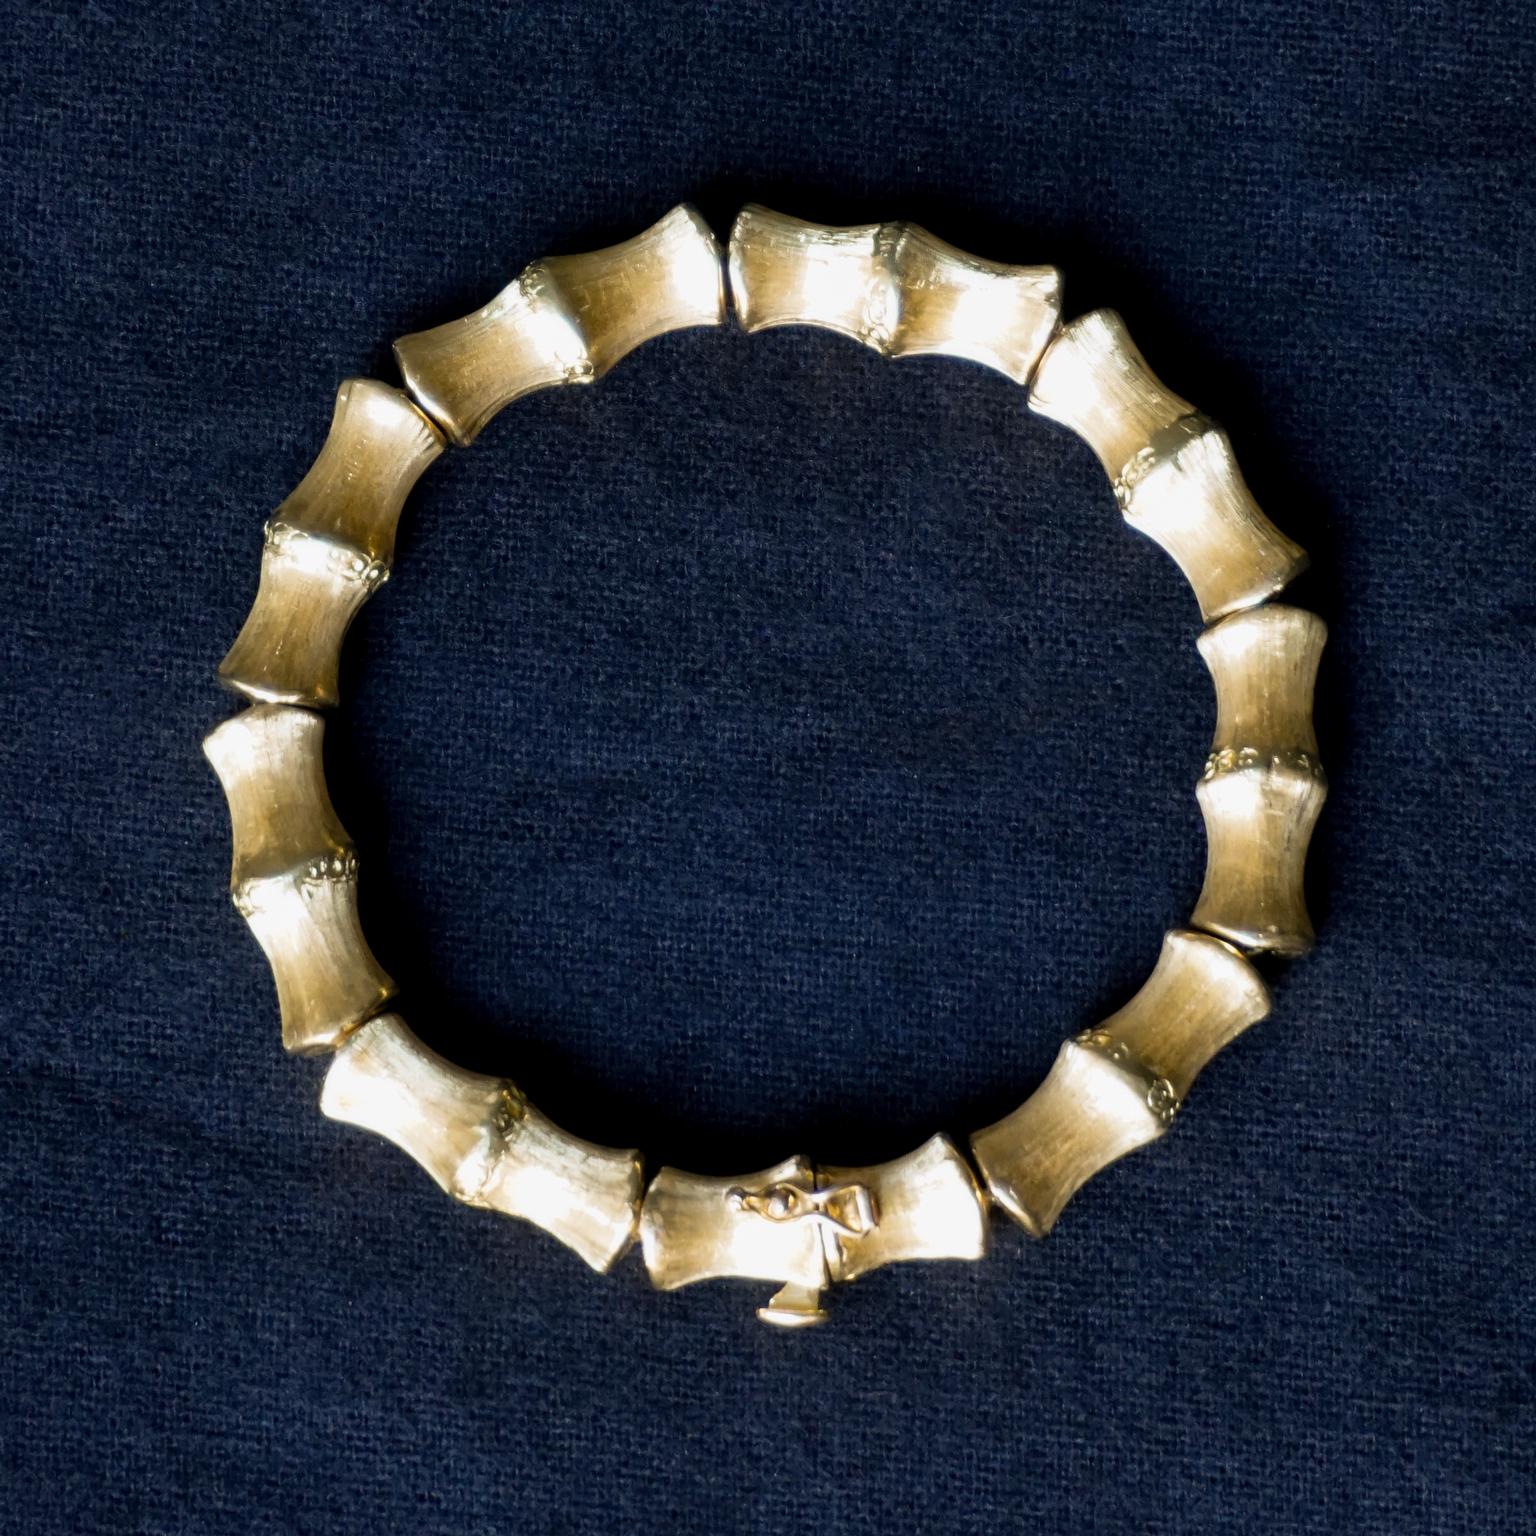 Klassisches 18-karätiges Goldarmband aus italienischem Bambusimitat, hergestellt von Vincenza.
Besteht aus neun goldgeätzten und gebürsteten Bambussegmenten, die im geschlossenen Zustand einen massiven, schweren (33 g) Goldarmreif mit einem